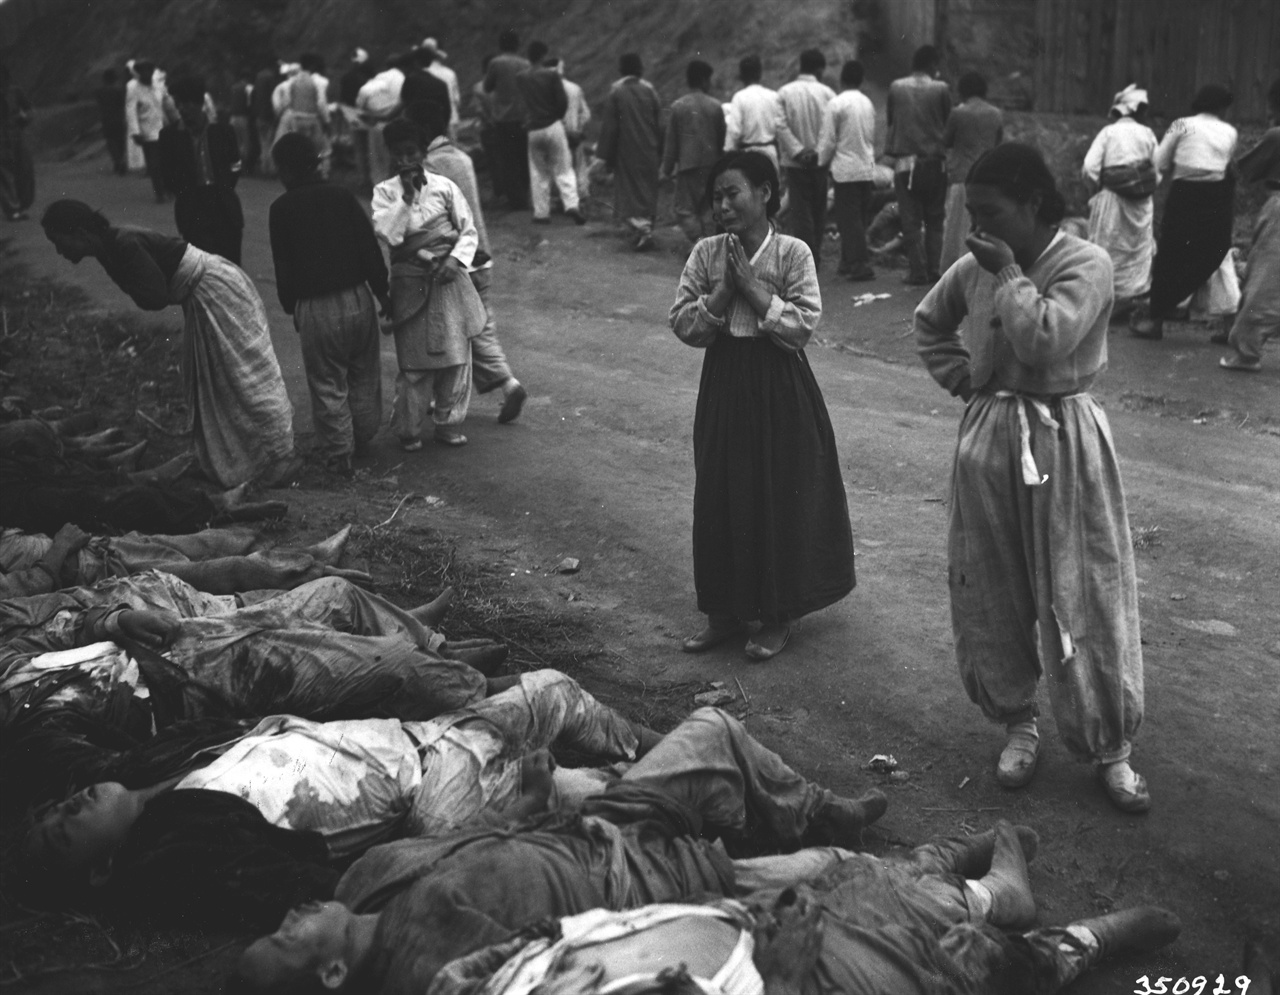 1950. 10. 19. 함흥, 300여 명의 정치범이 동굴에 불법 감금되어 질식해 죽었다. 유엔군이 점령한 뒤 이 시신들을 꺼내 늘어놓자 유족들이 가족을 확인하며 울부짖고 있다.